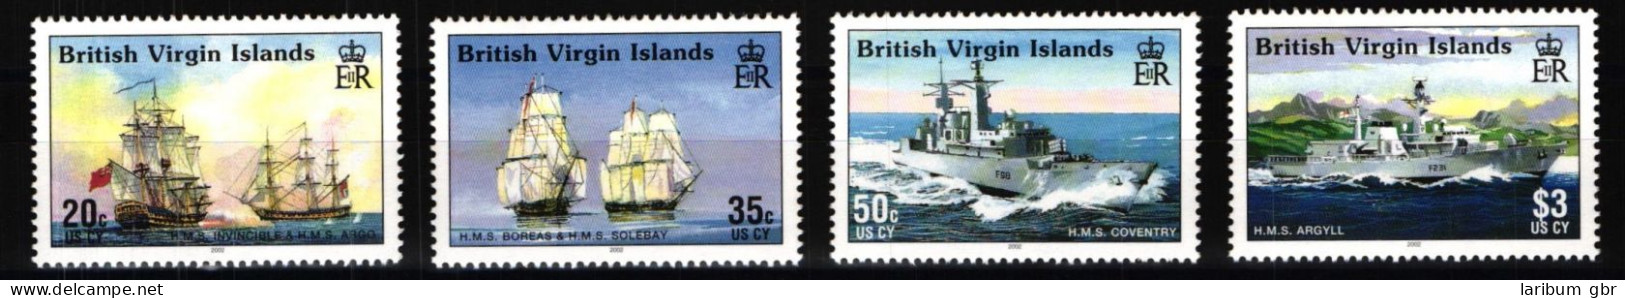 Jungferninseln 1055-1058 Postfrisch Schifffahrt #JH796 - British Virgin Islands